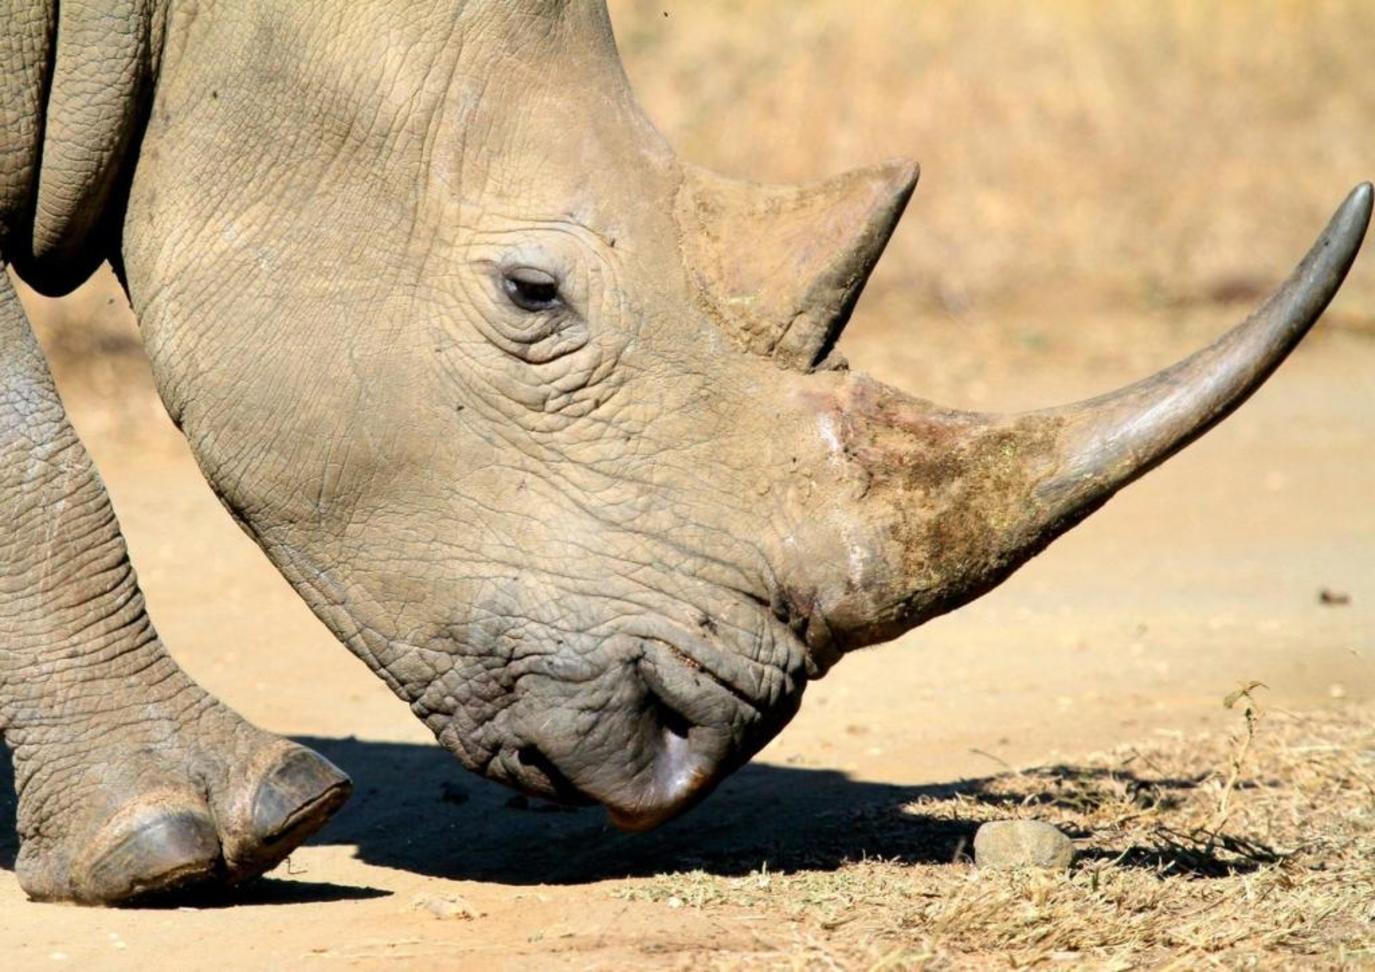 تسميم وحيد القرن حل جديد لحمايته من الانقراض والصيد الجائر! | مجلة سيدتي